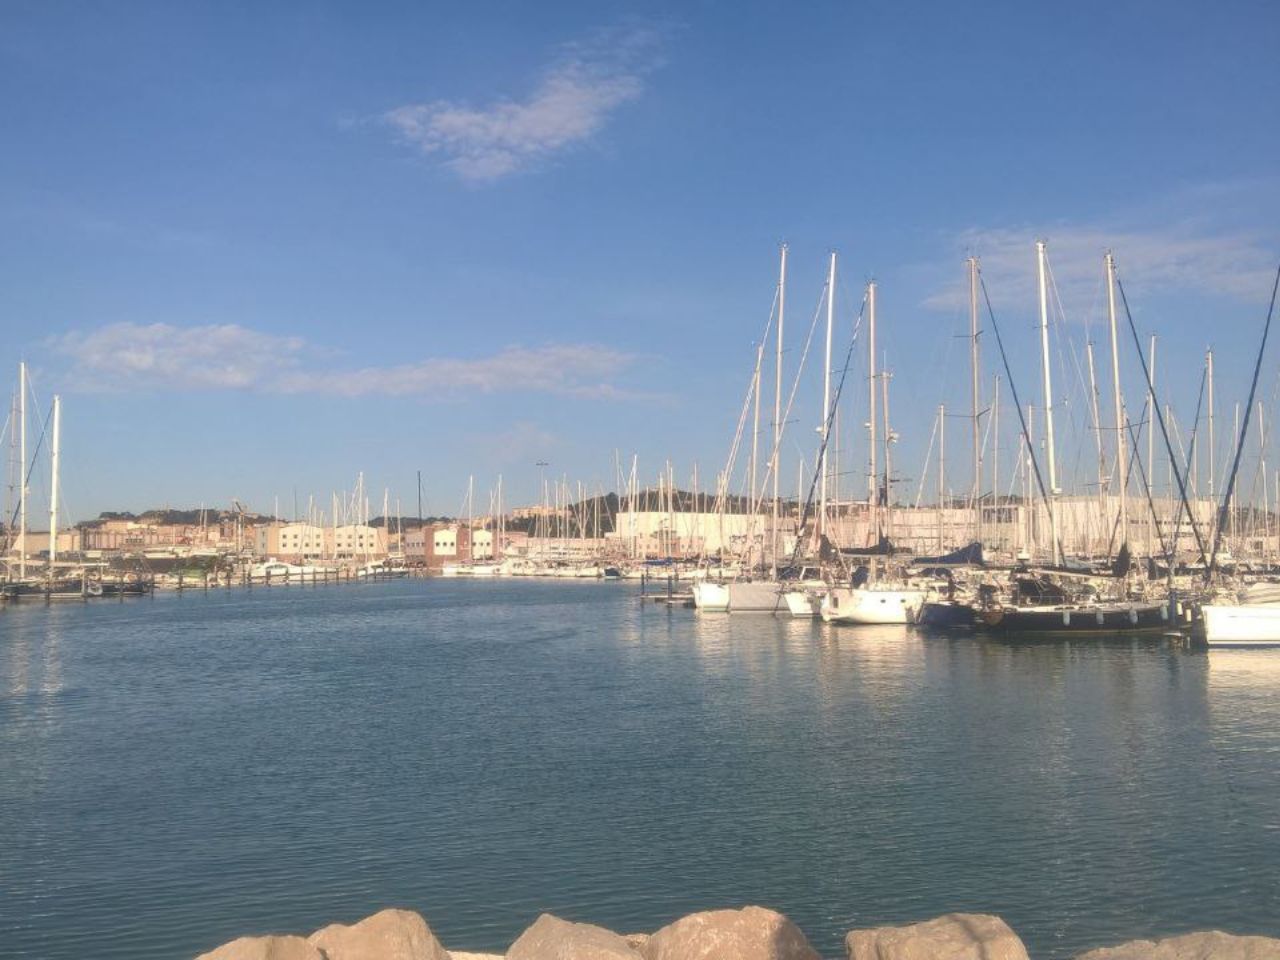 Festa del mare, dal talk di ieri pomeriggio: “il ruolo di Ancona nell’economia marittima”